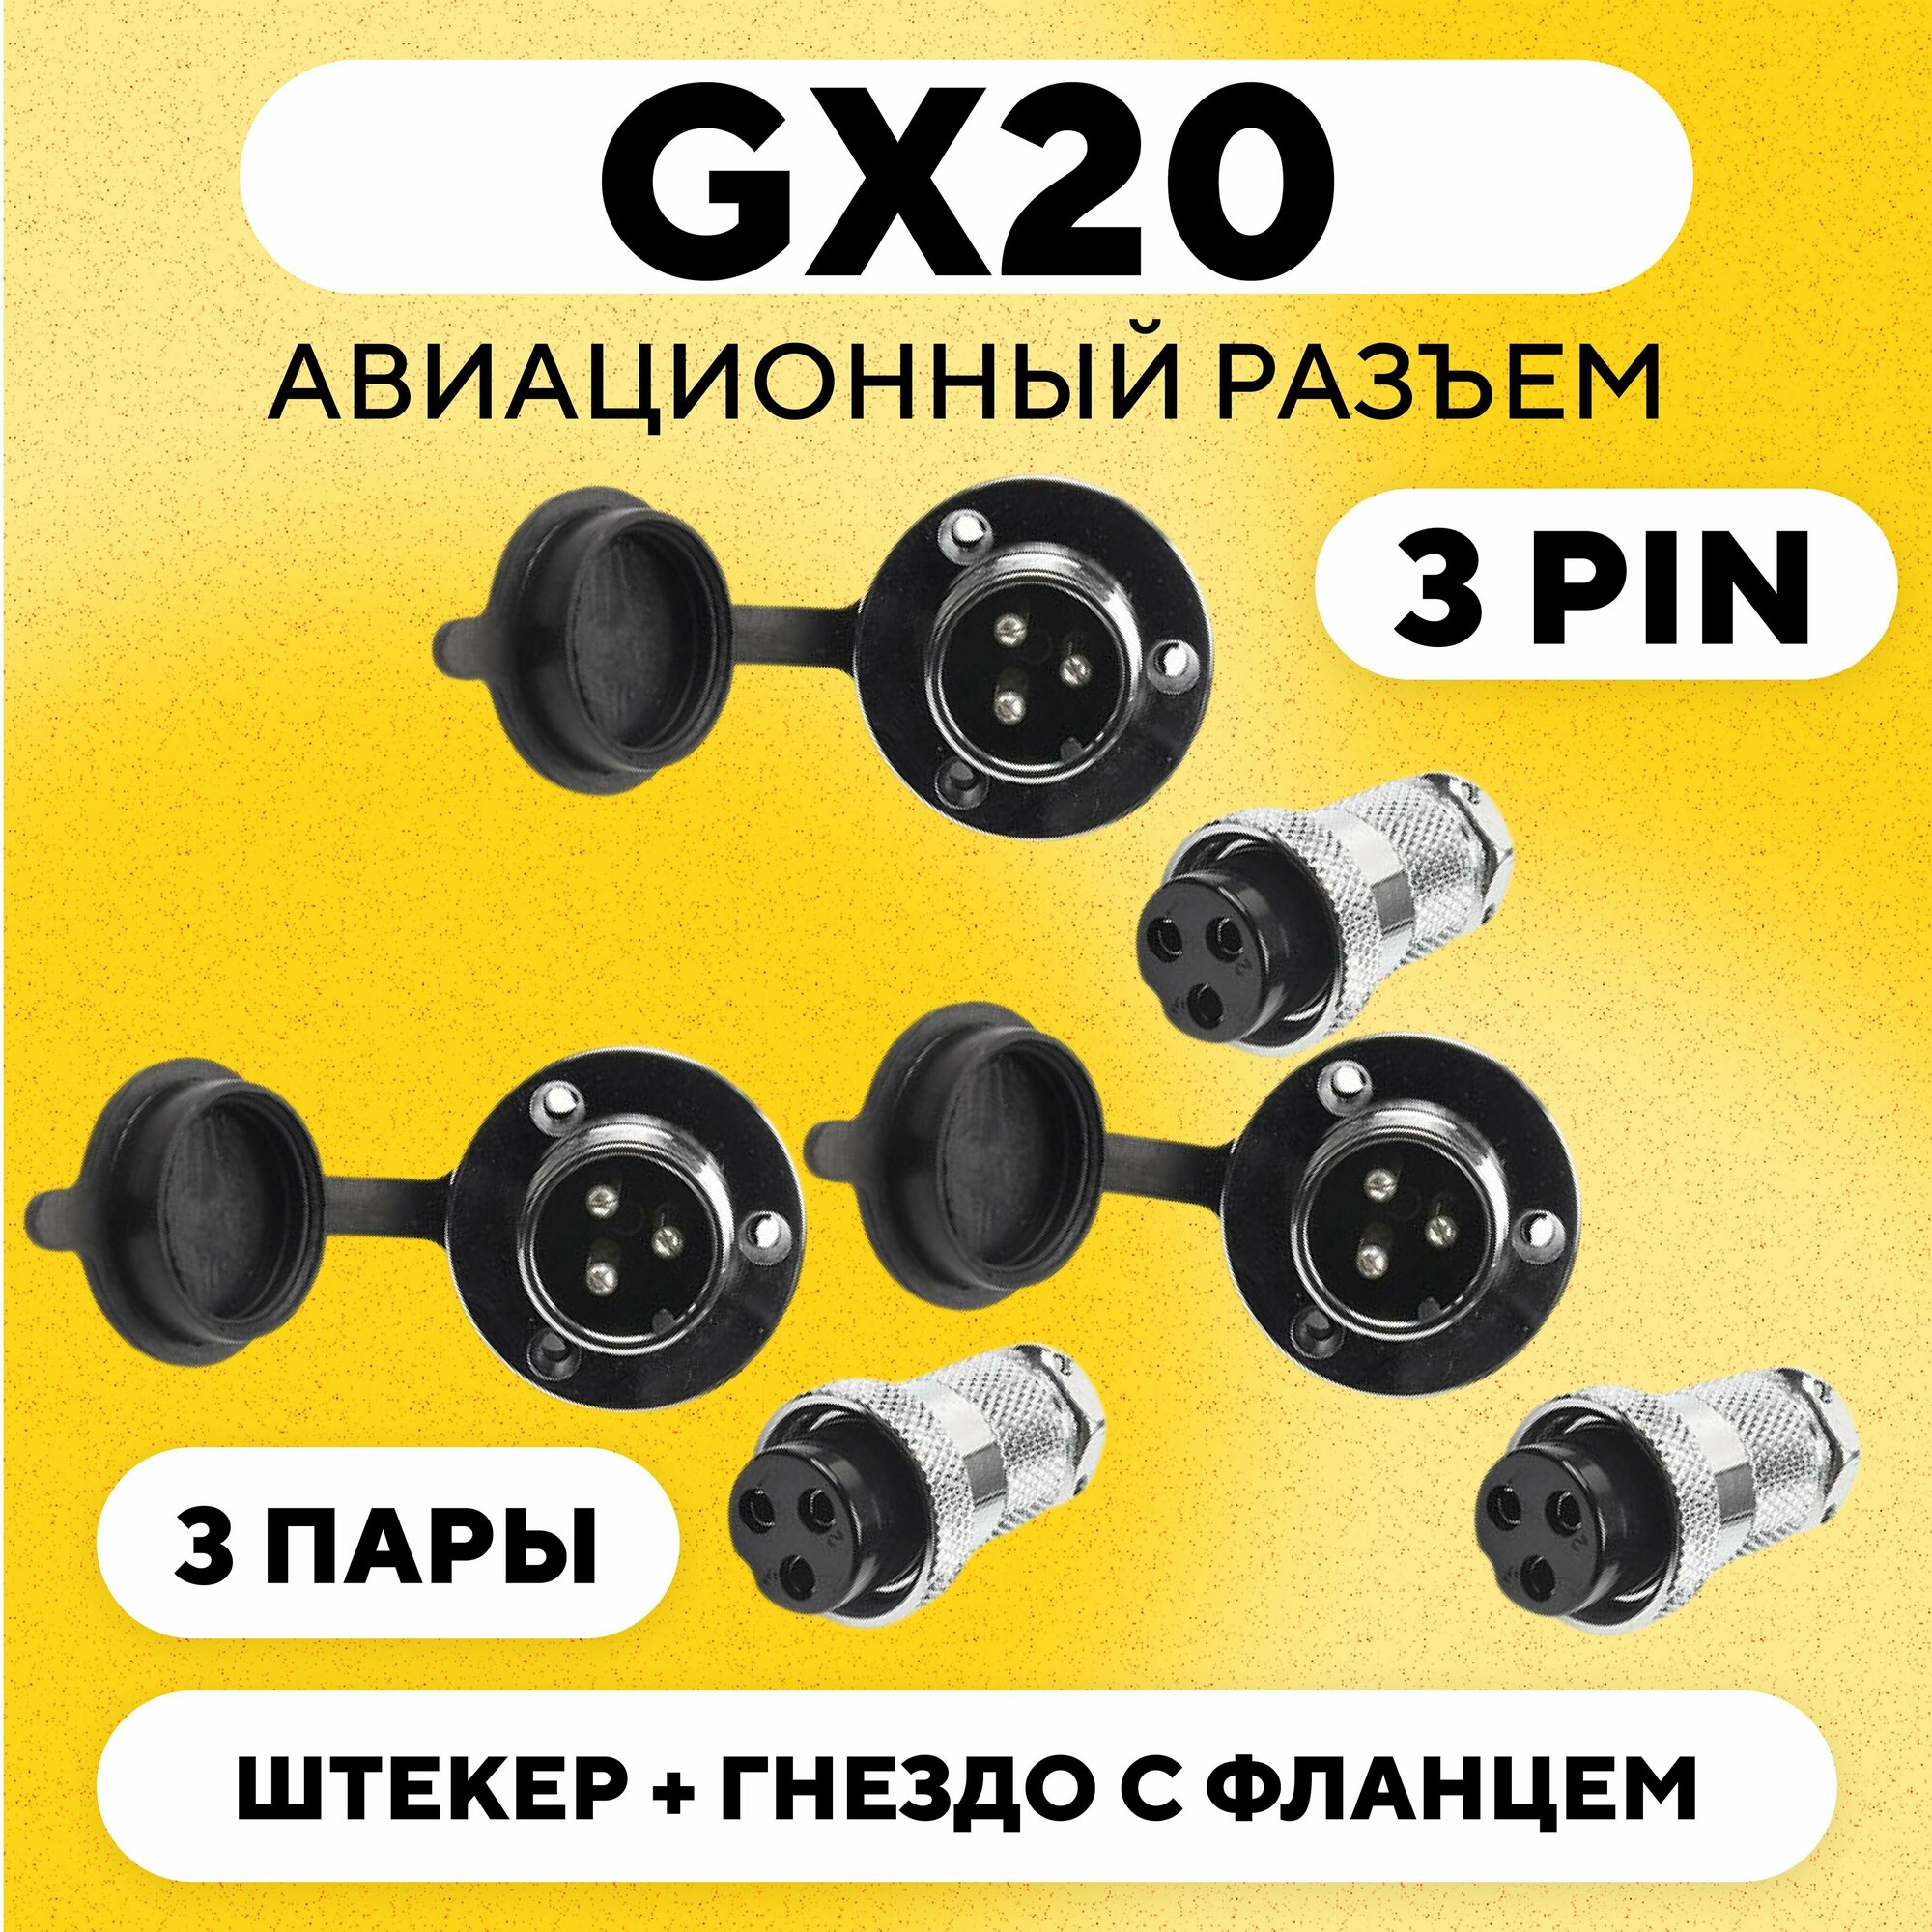 Авиационный разъем GX20 штекер + гнездо с фланцем (DF20, 3 pin, папа+мама, комплект 3 пары)